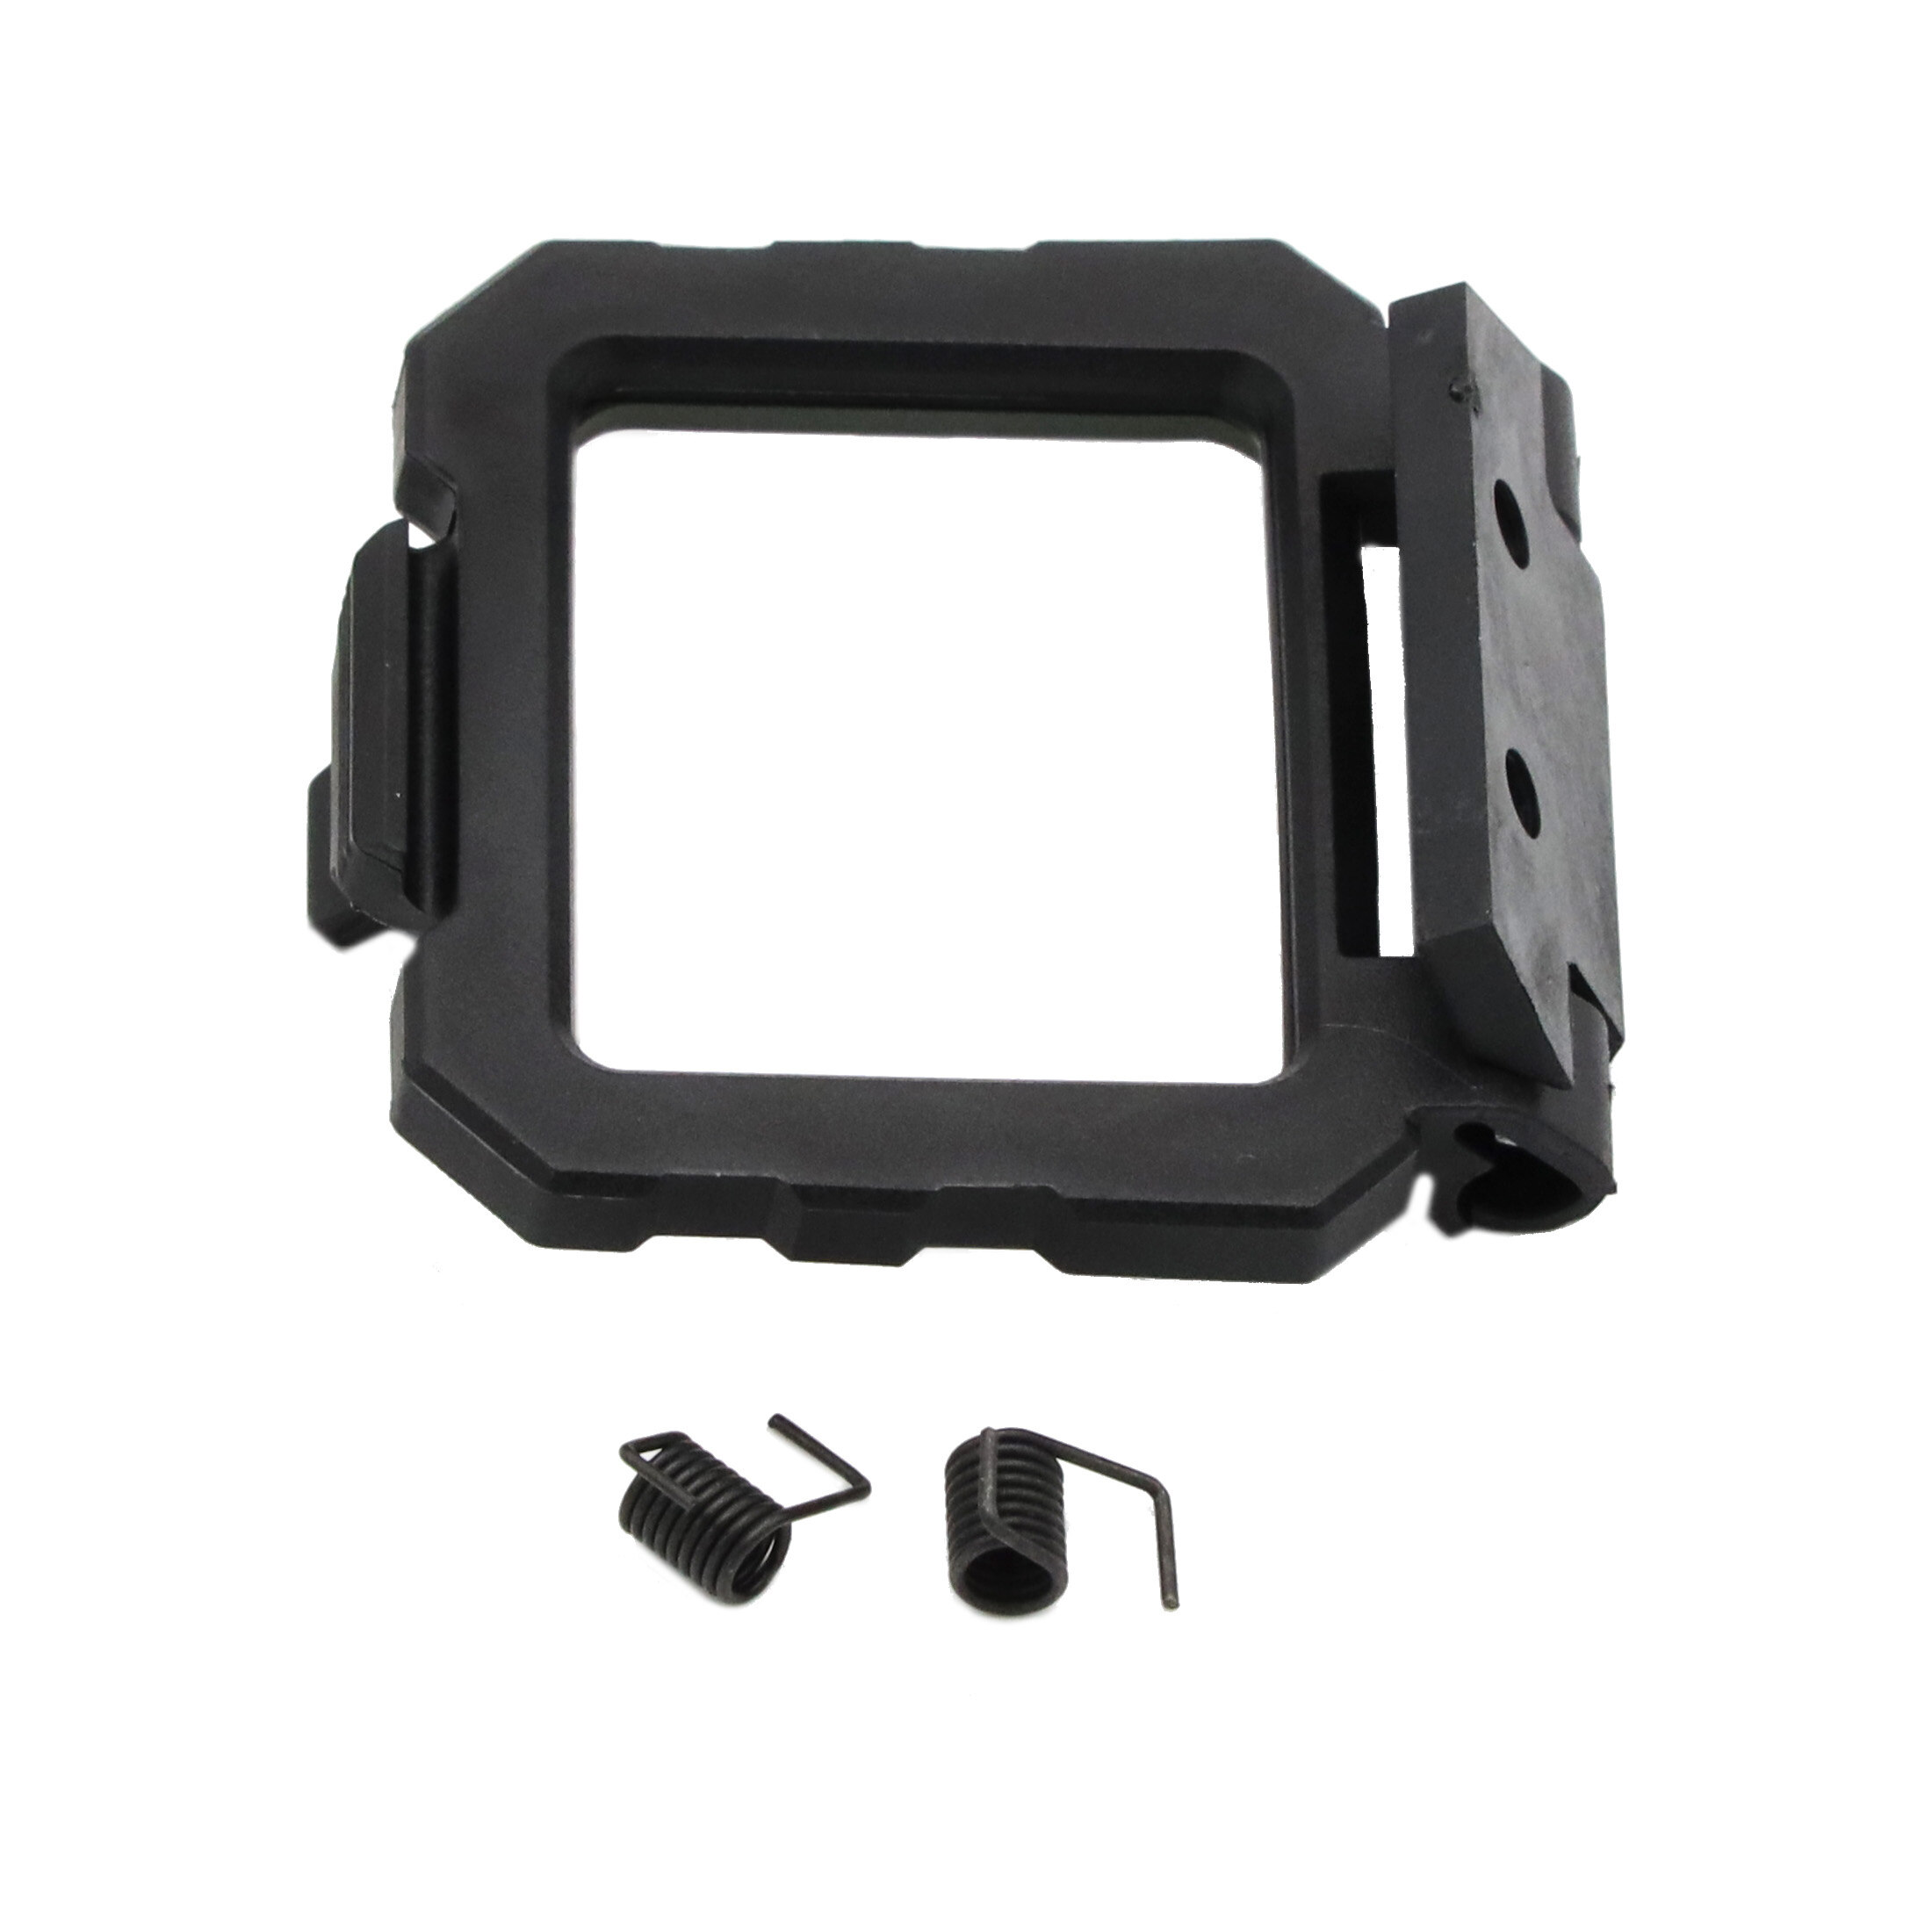 Couvercle de protection contre la poussière en verre montable AEMS, pièce d'accessoire pour viseur …